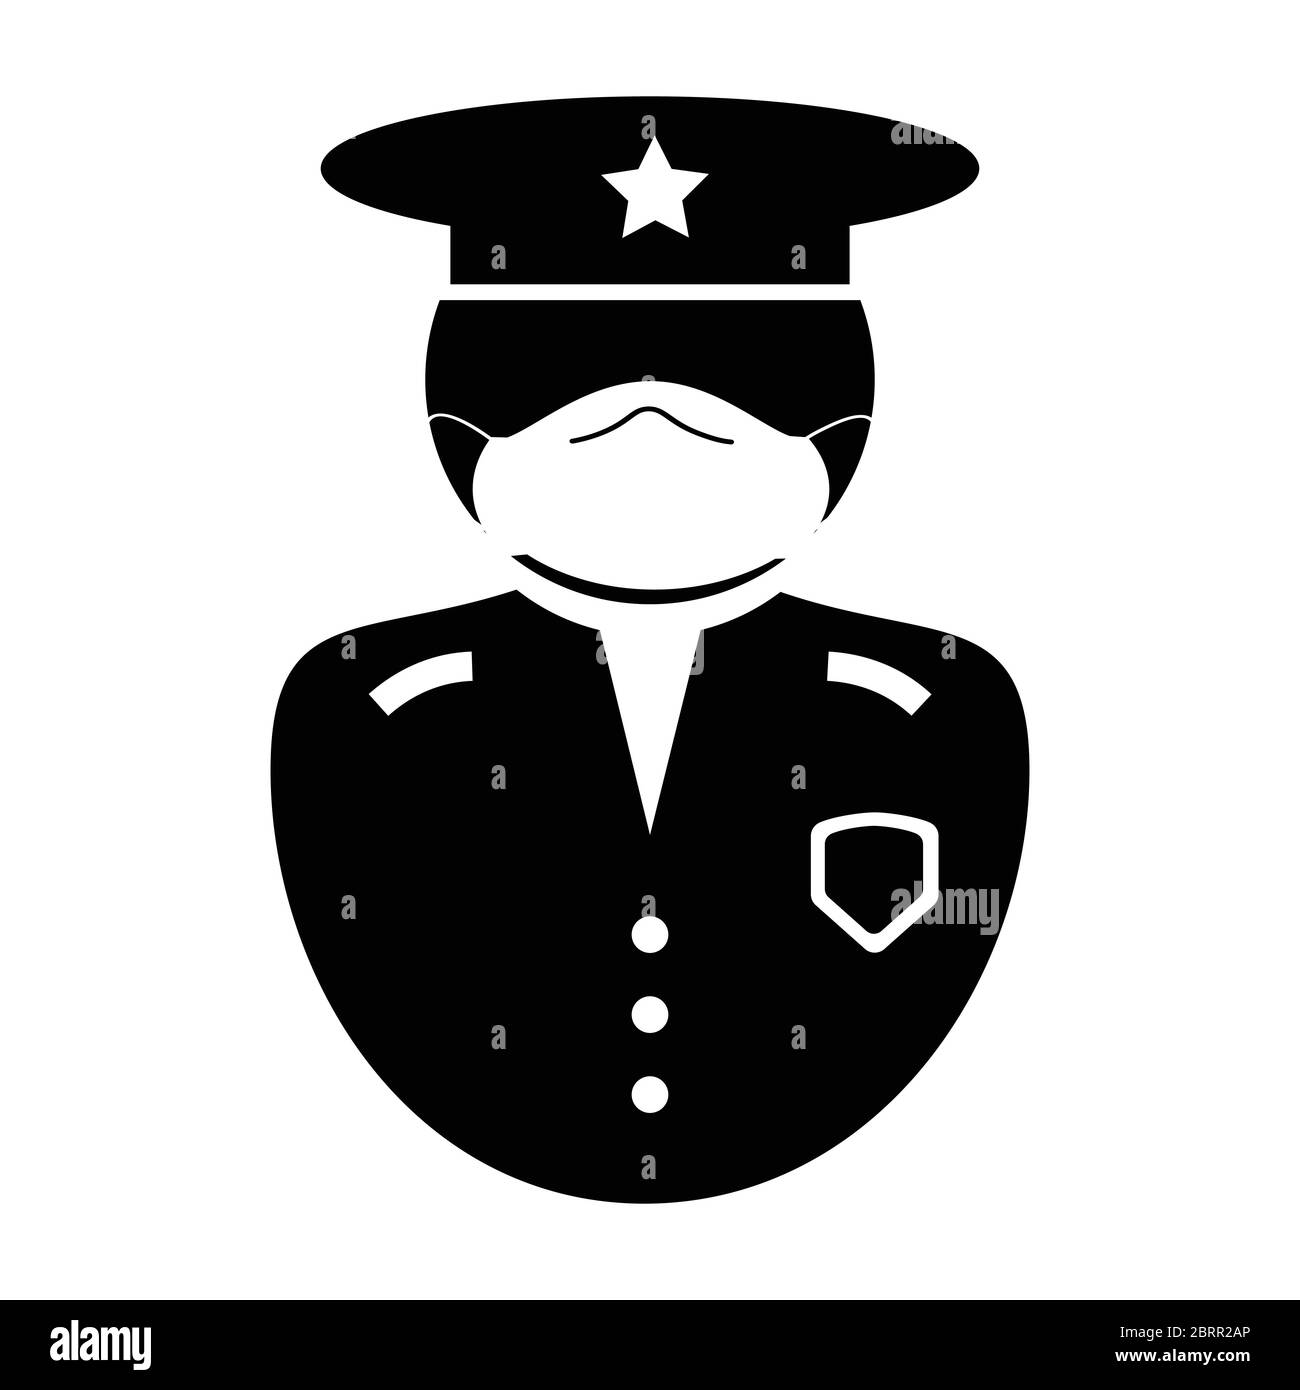 Icona del responsabile della polizia. Icona raffigurante un pittogramma in bianco e nero raffigurante un ufficiale delle forze dell'ordine in uniforme con maschera facciale, cappello e badge. Illustrazione Illustrazione Vettoriale